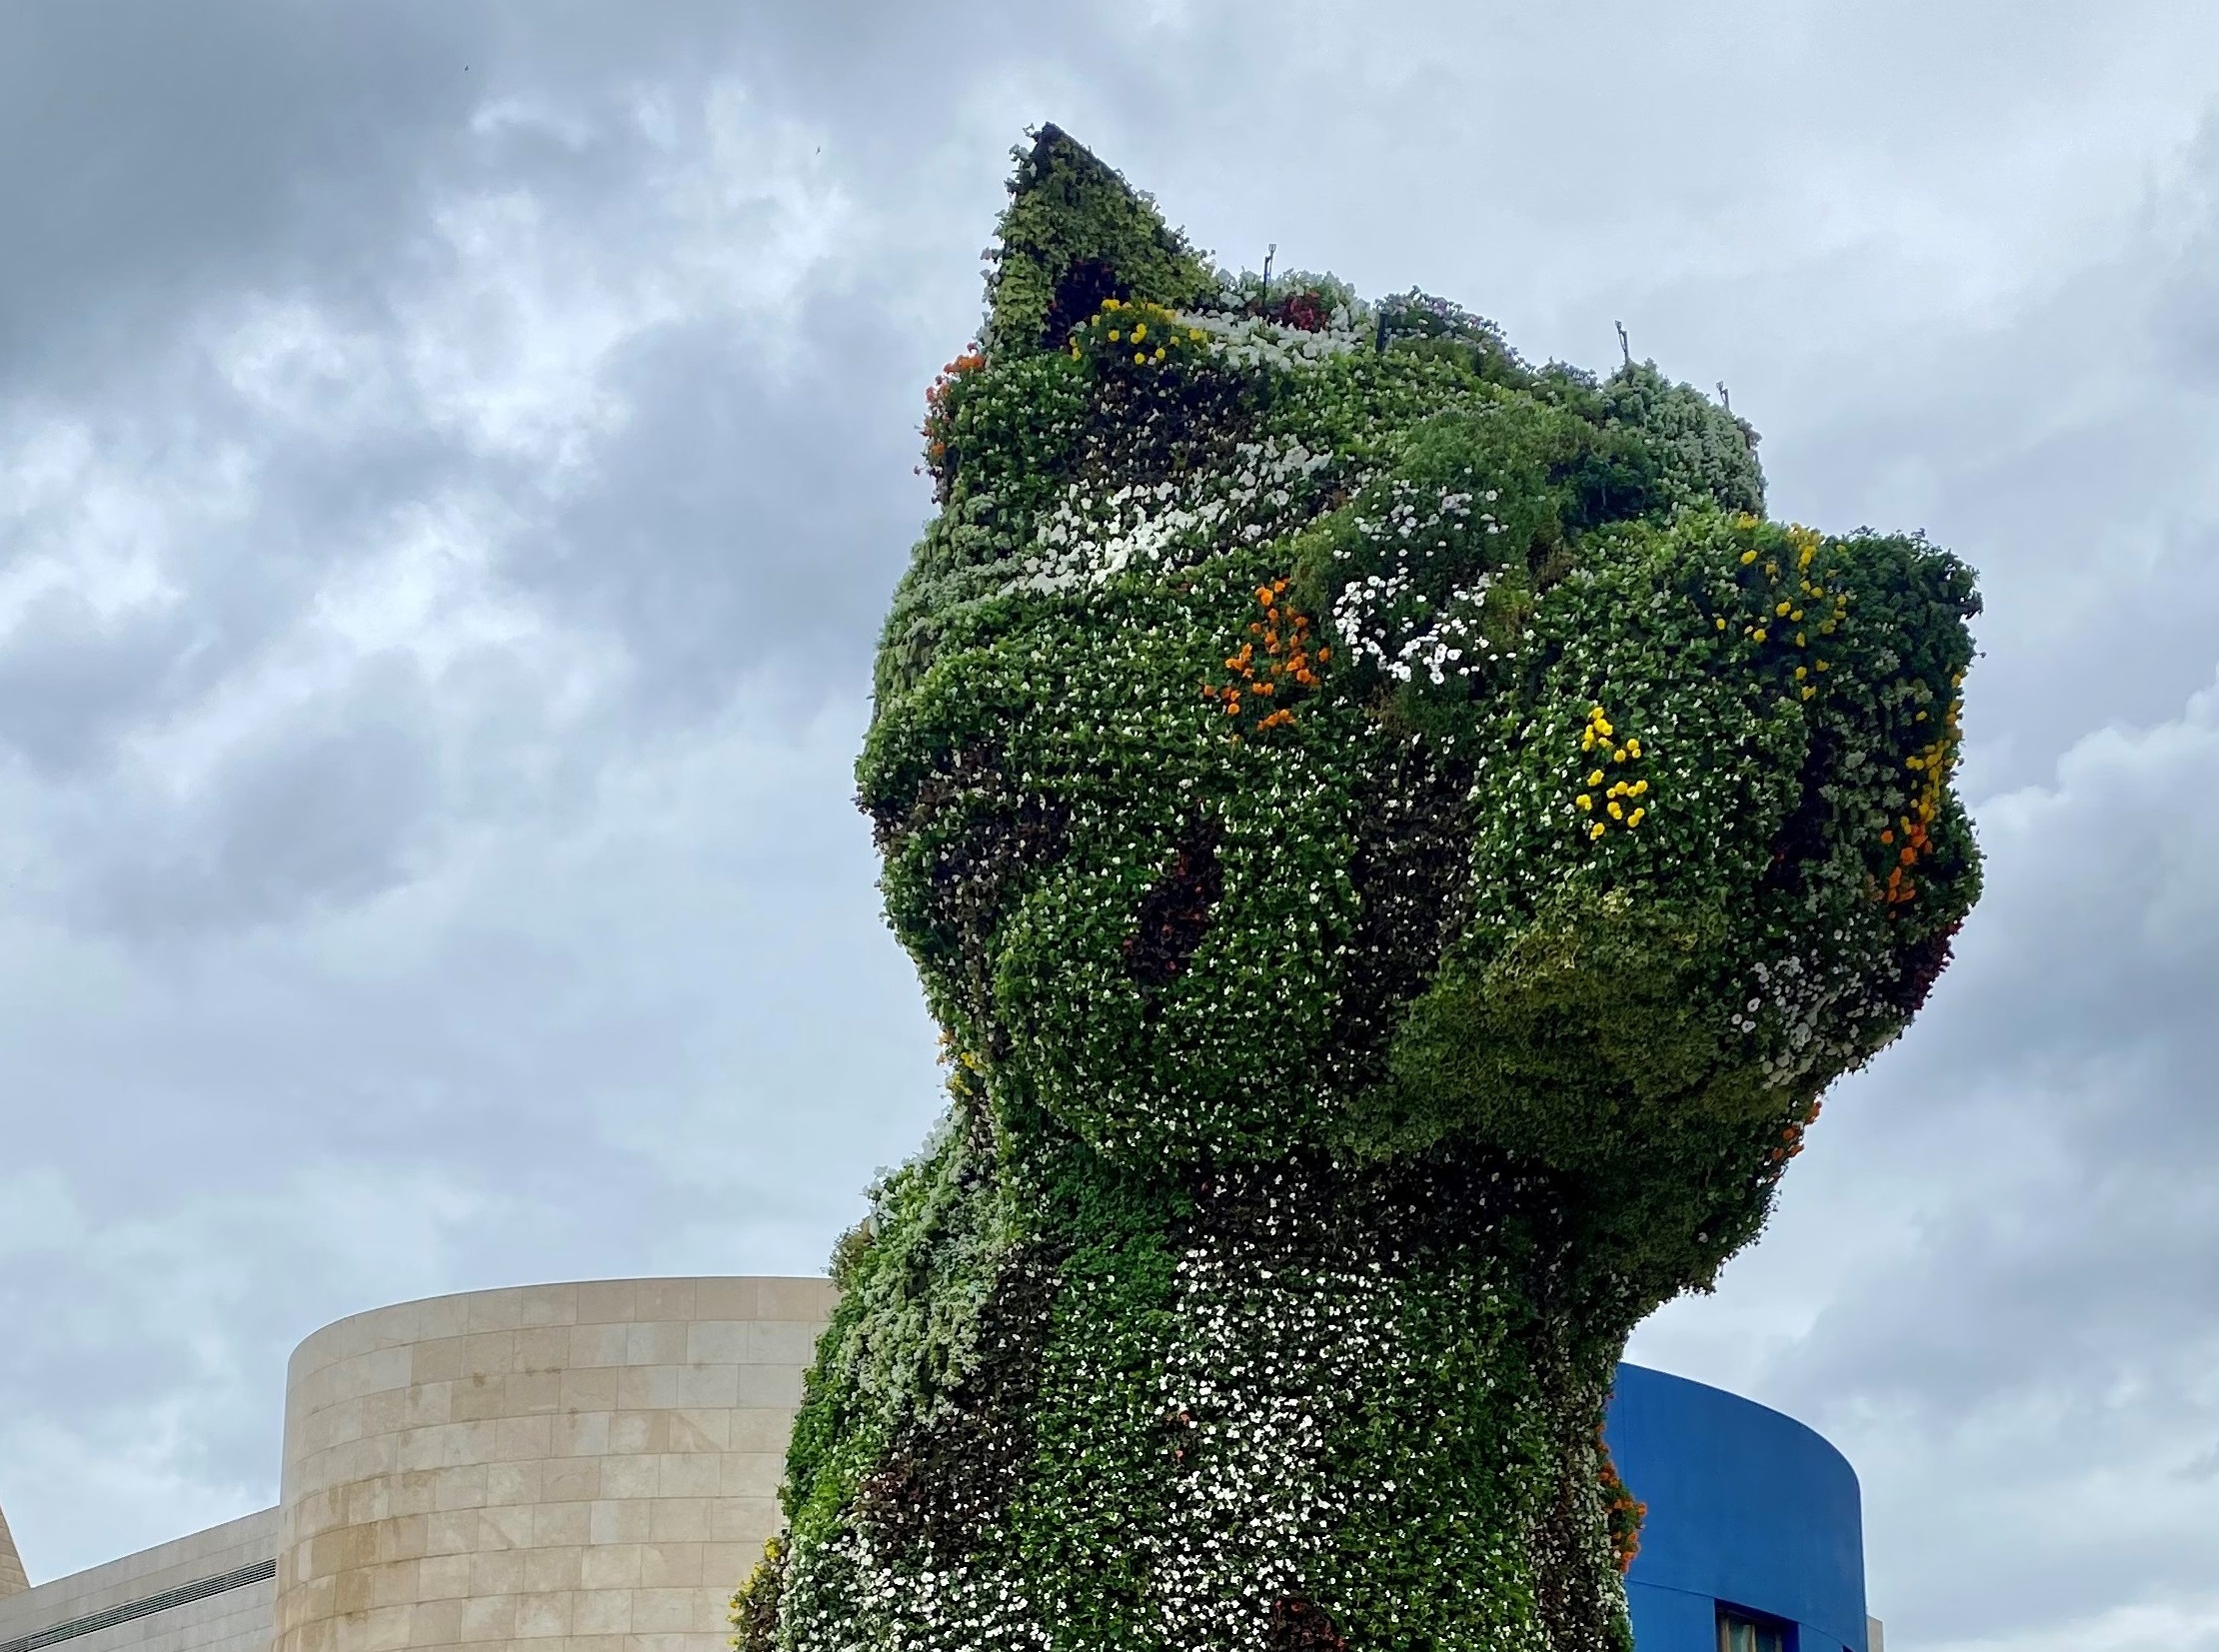 Guggenheim Bilbao. Puppy cambia colore: nuovo look per il cucciolo gigante di Jeff Koons